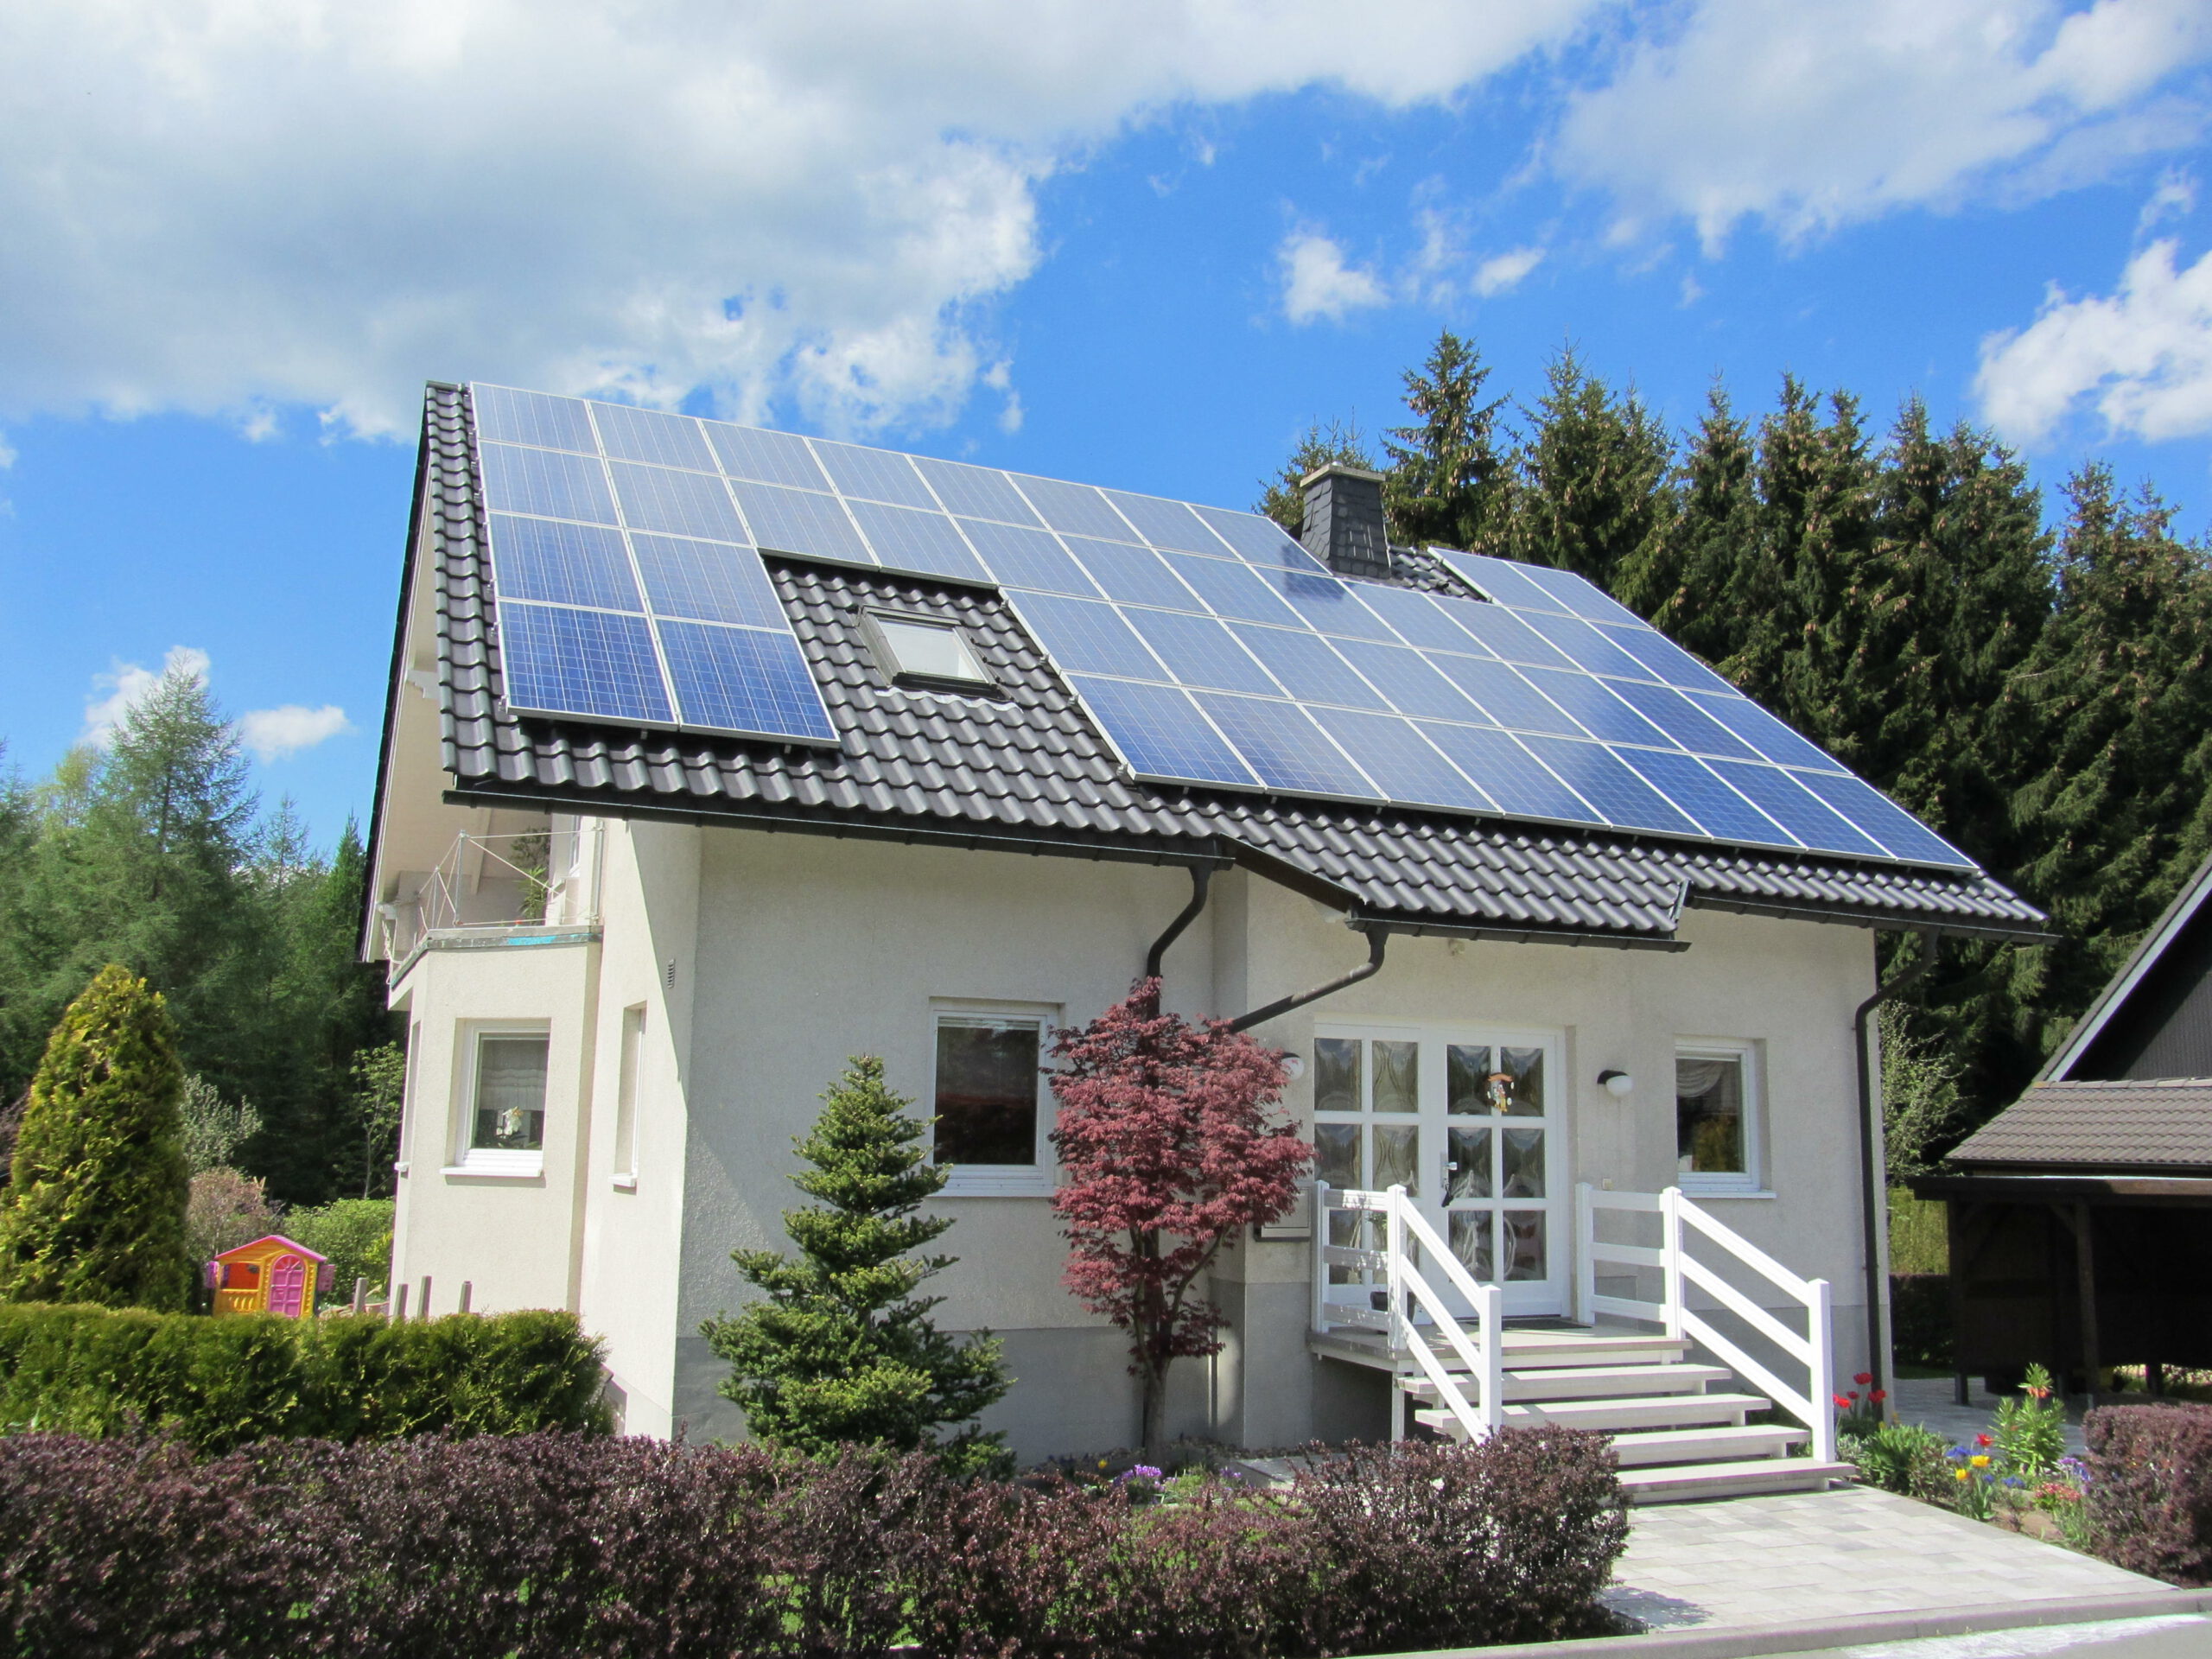 Einfamilienhaus mit Photovoltaikanlage scaled 1